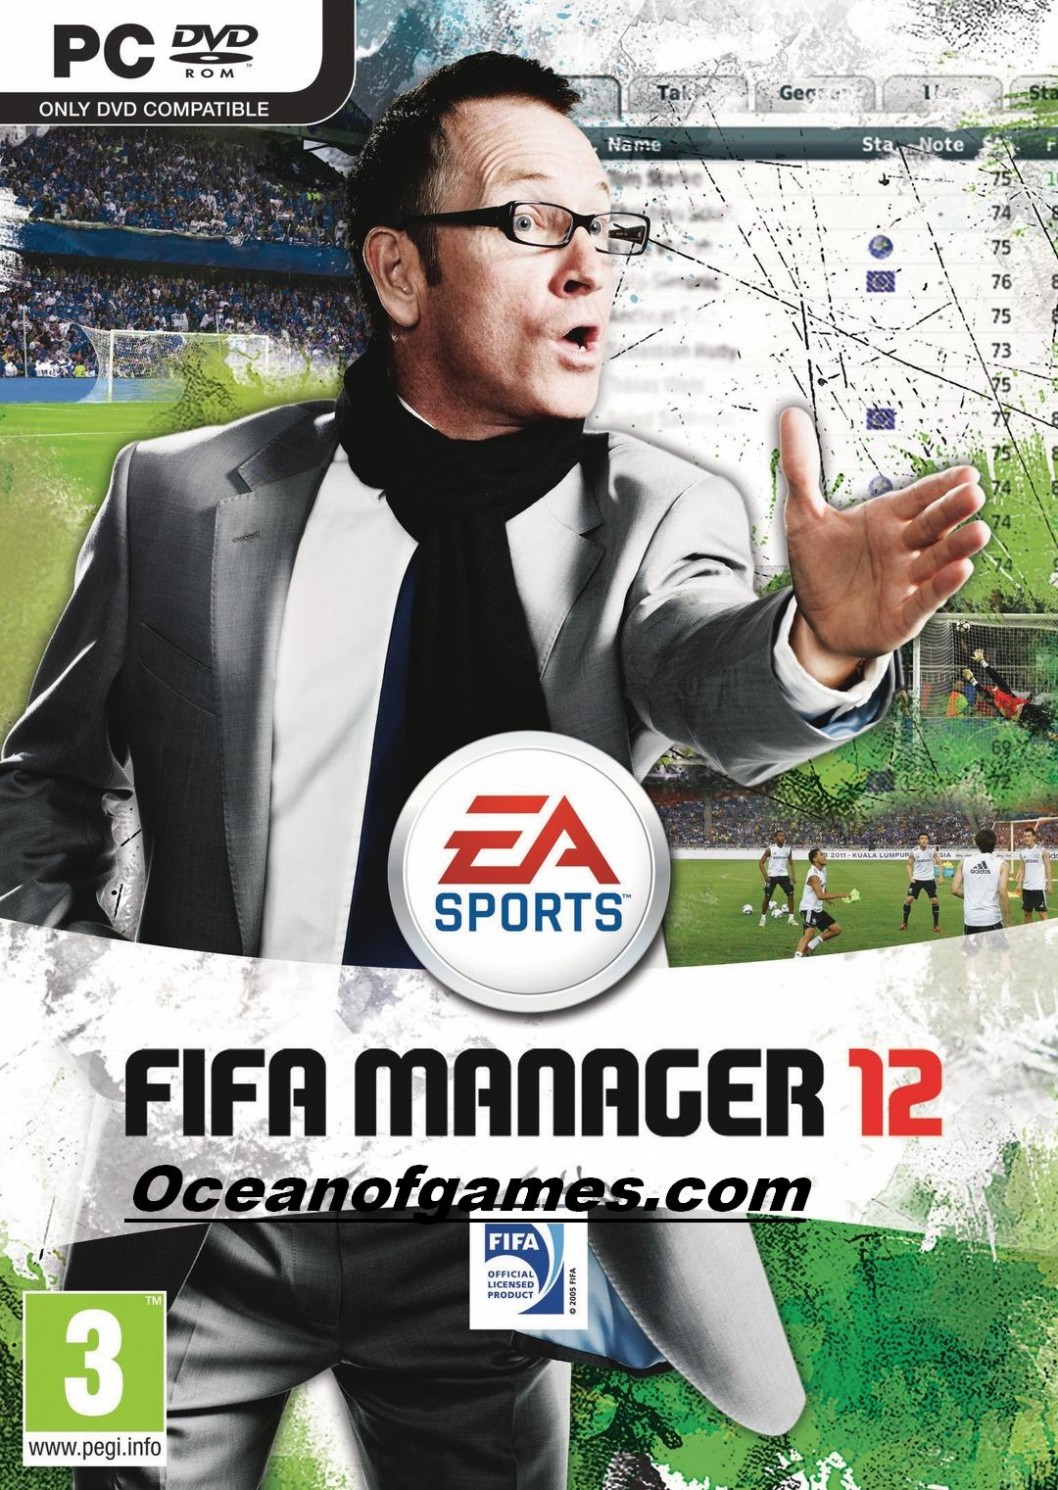 premier manager 12 download